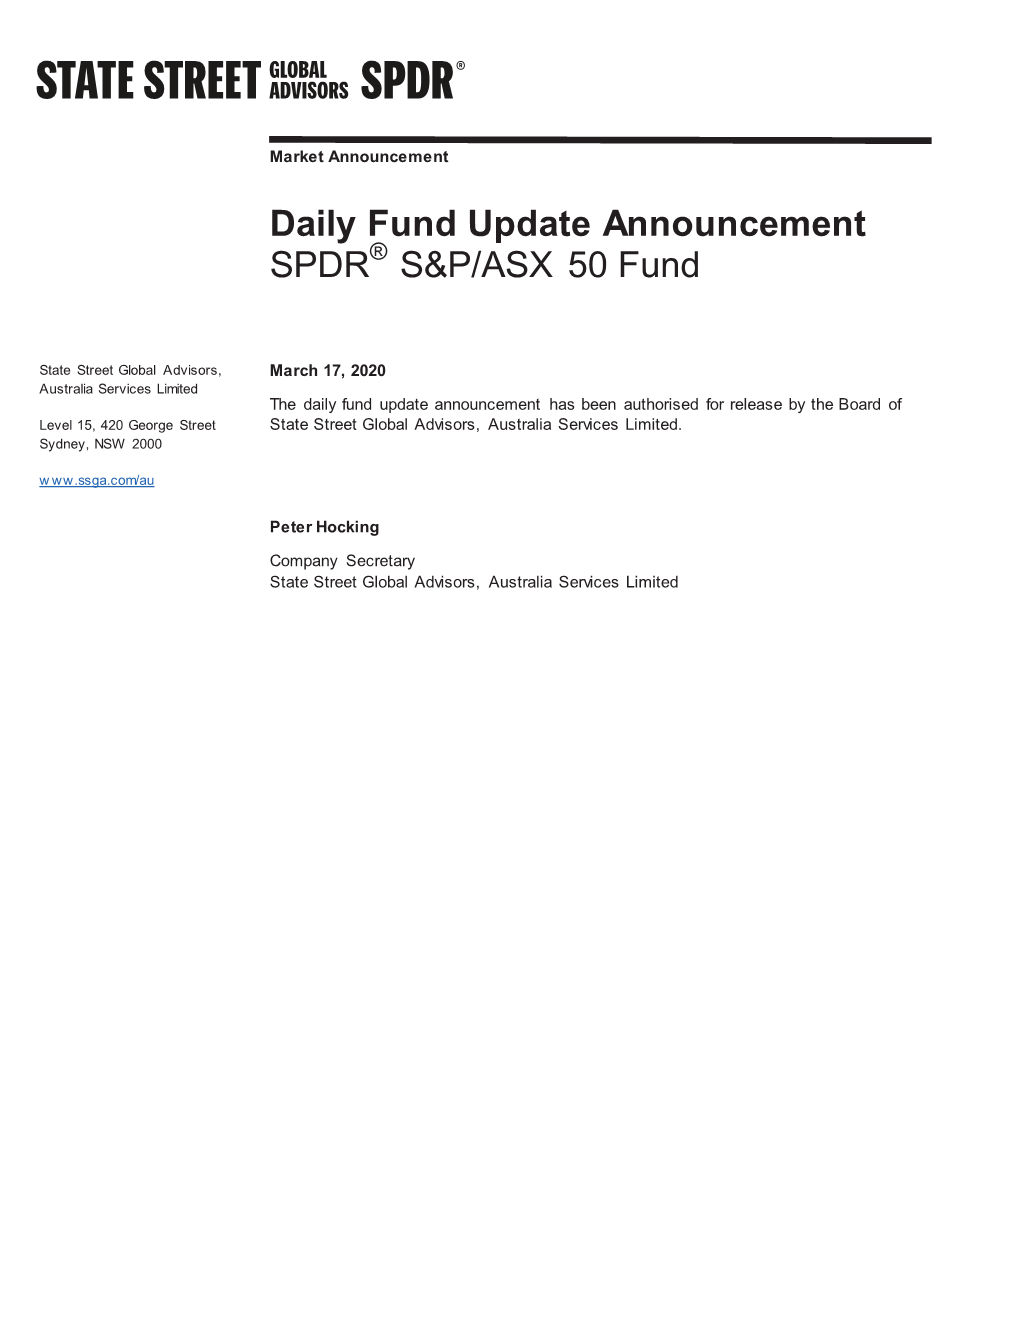 Daily Fund Update Announcement SPDR S&P/ASX 50 Fund